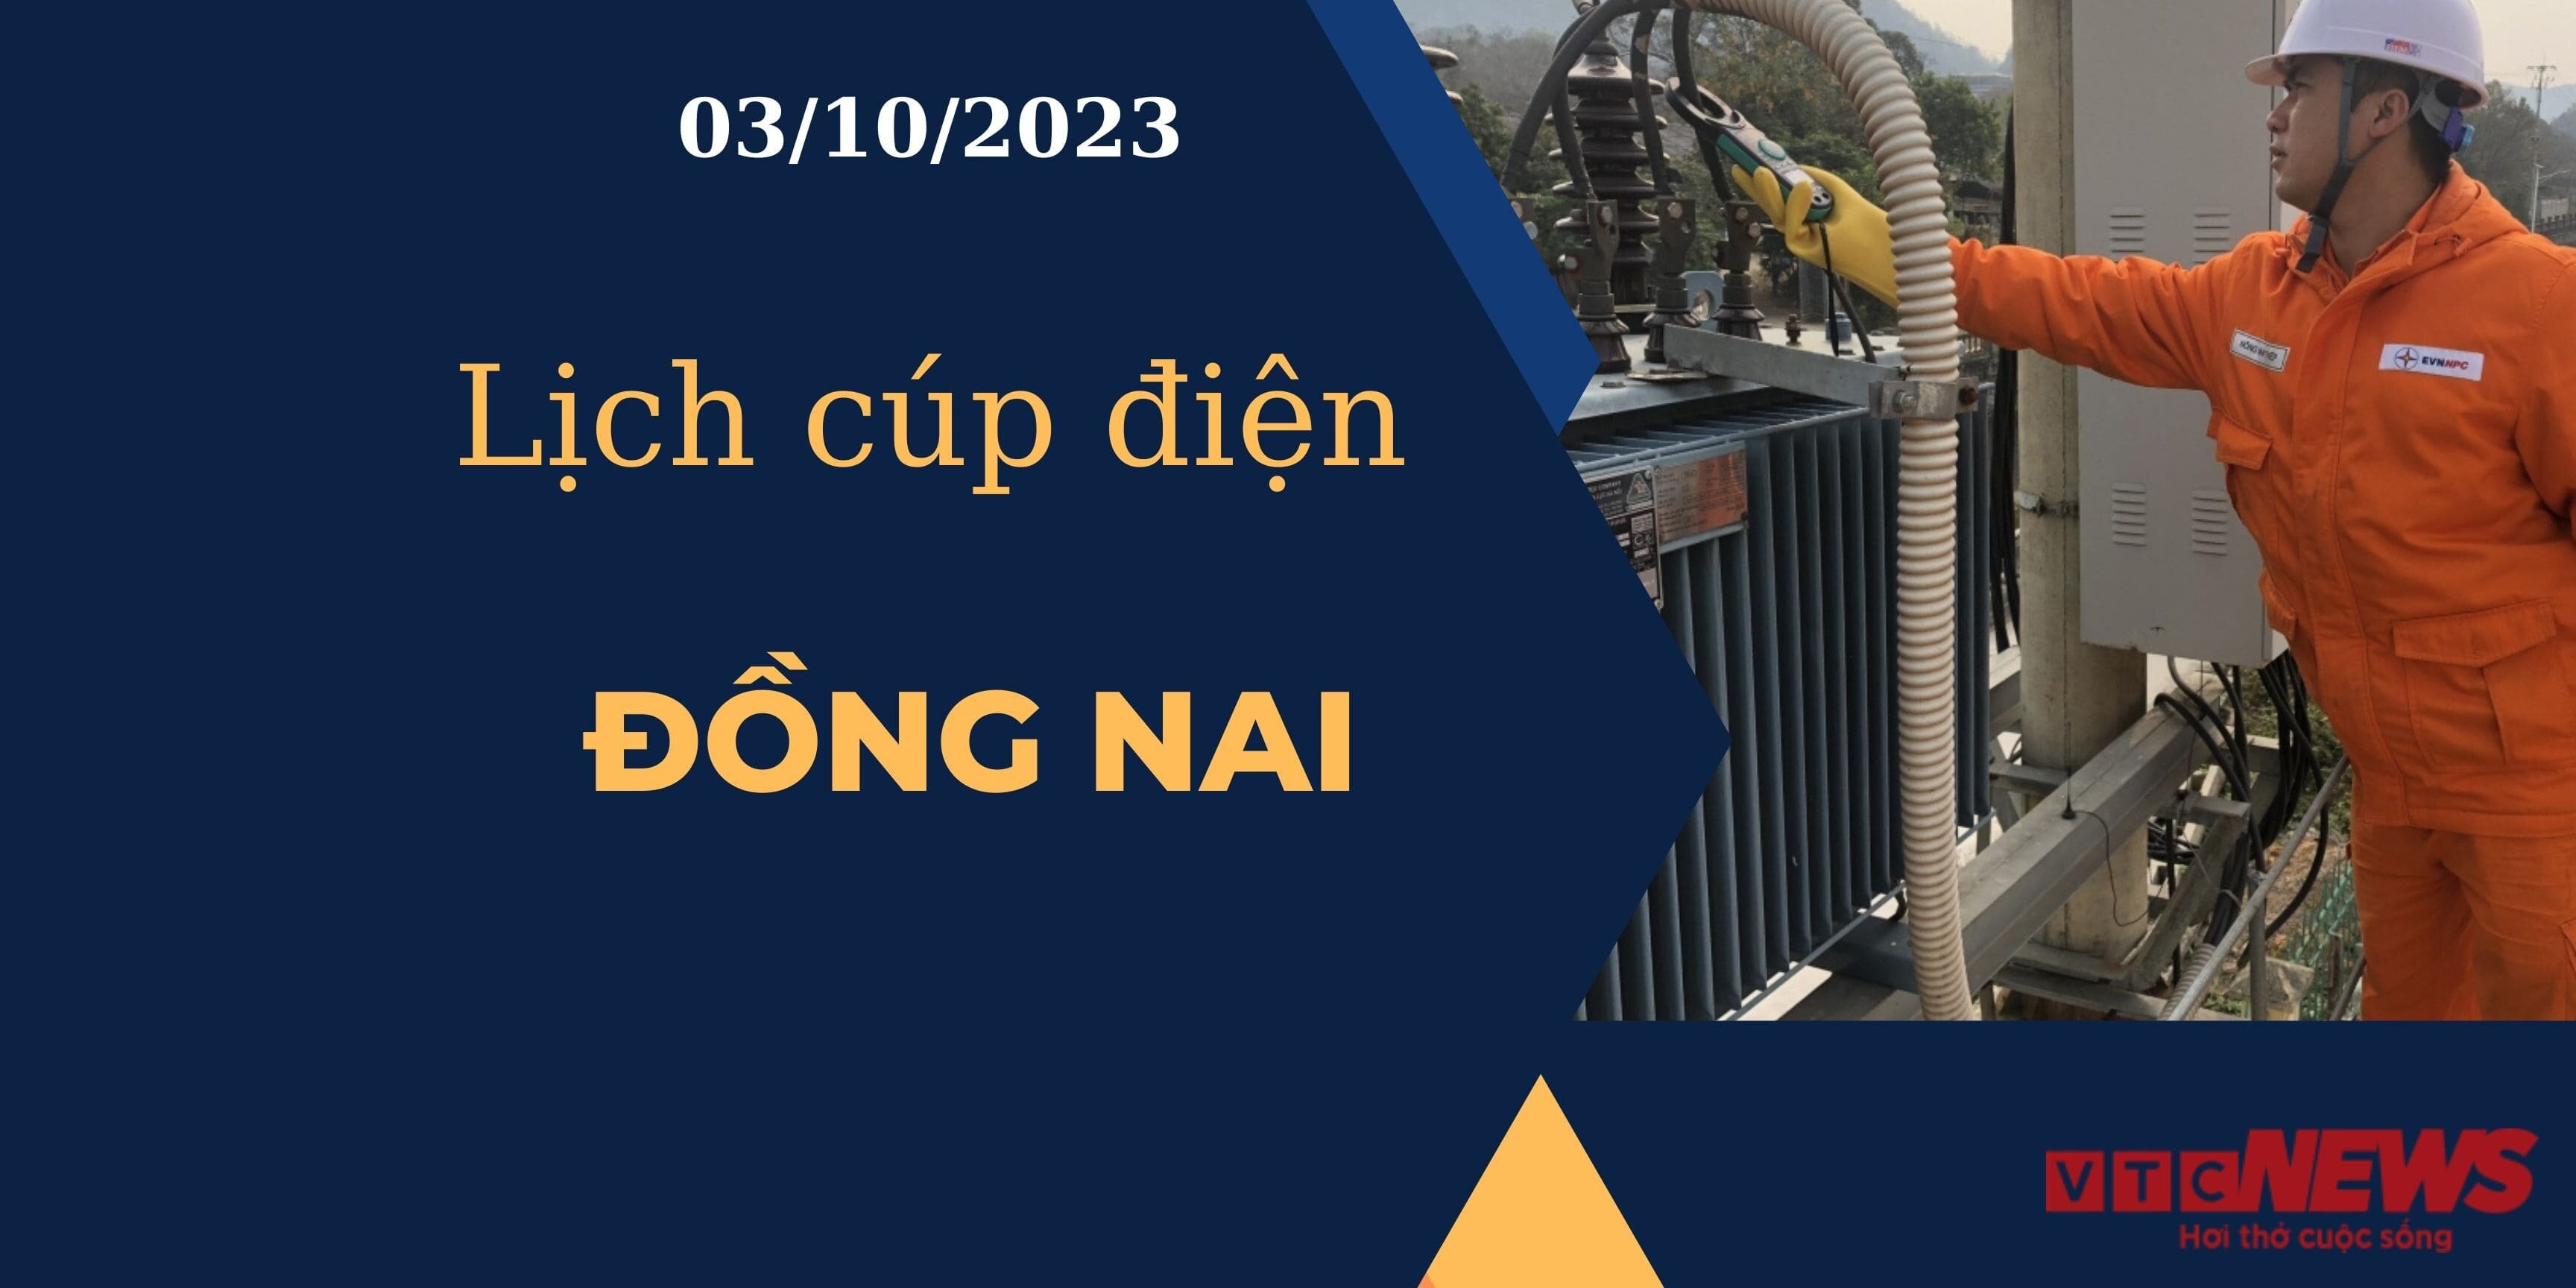 Lịch cúp điện hôm nay ngày 03/10/2023 tại Đồng Nai.